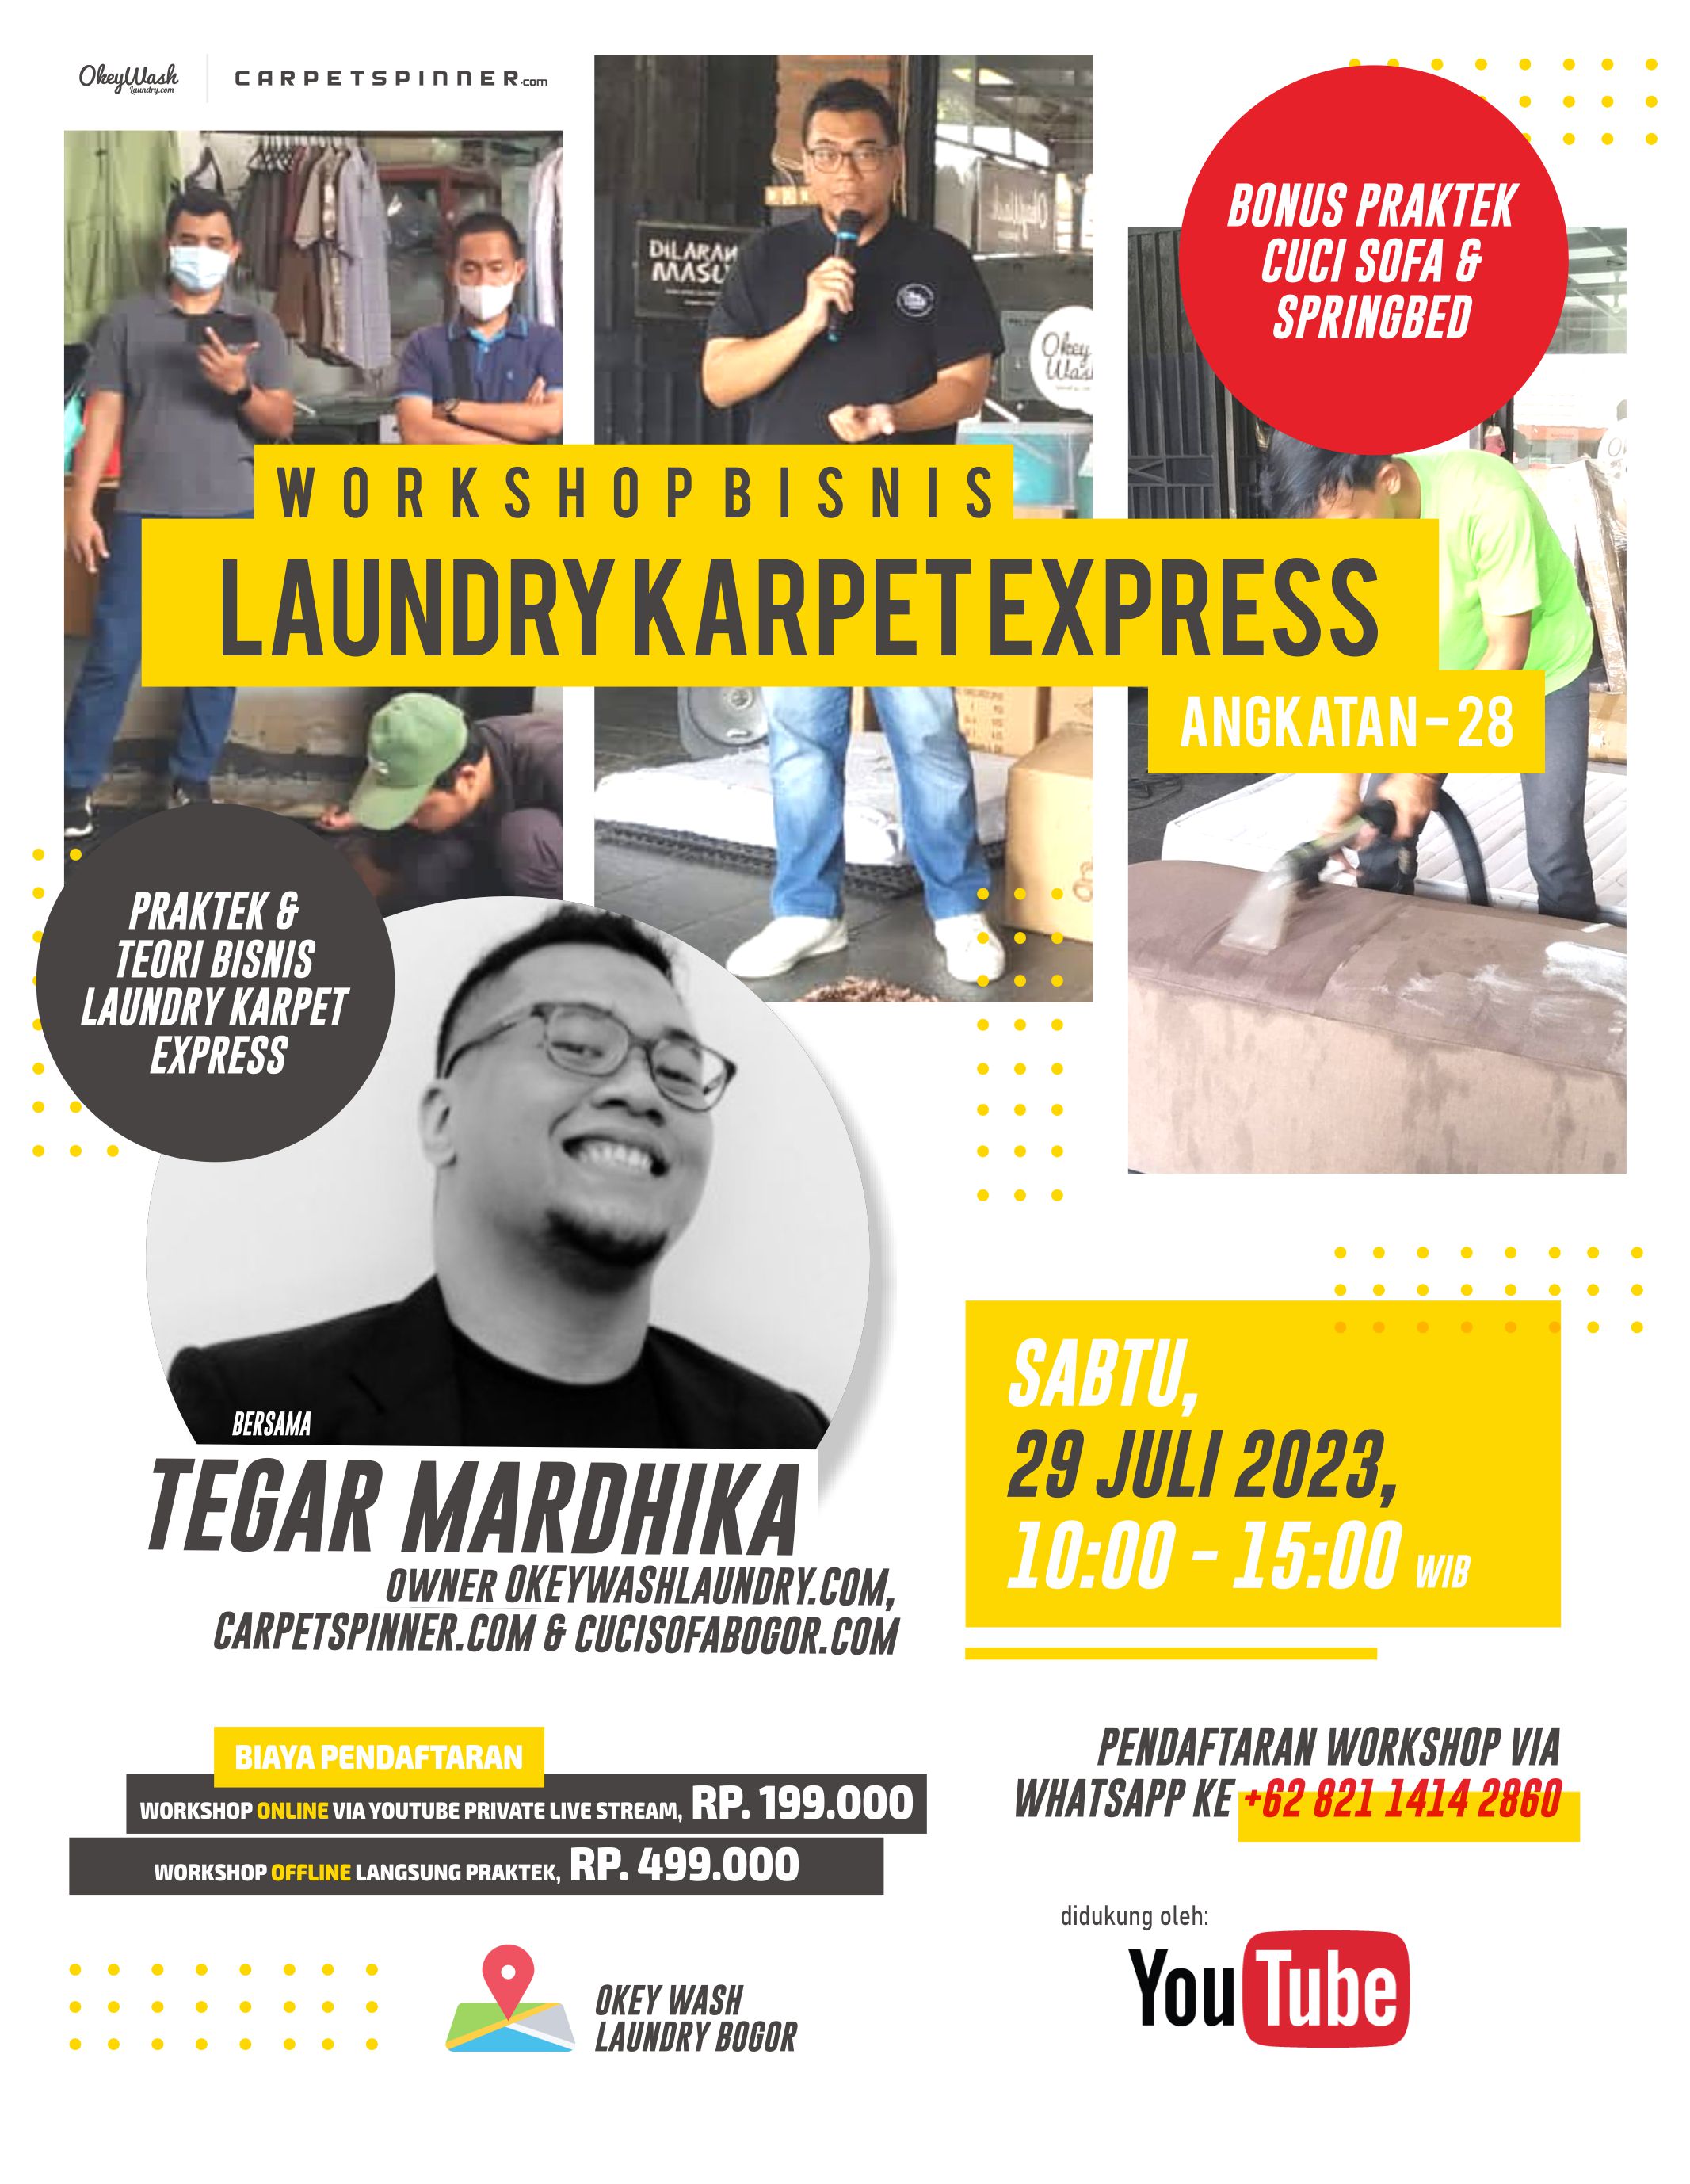 Workshop Bisnis Laundry Karpet Express, 29 Juli 2023. Daftar Sekarang Juga Via WhatsApp ke +6282114142860!